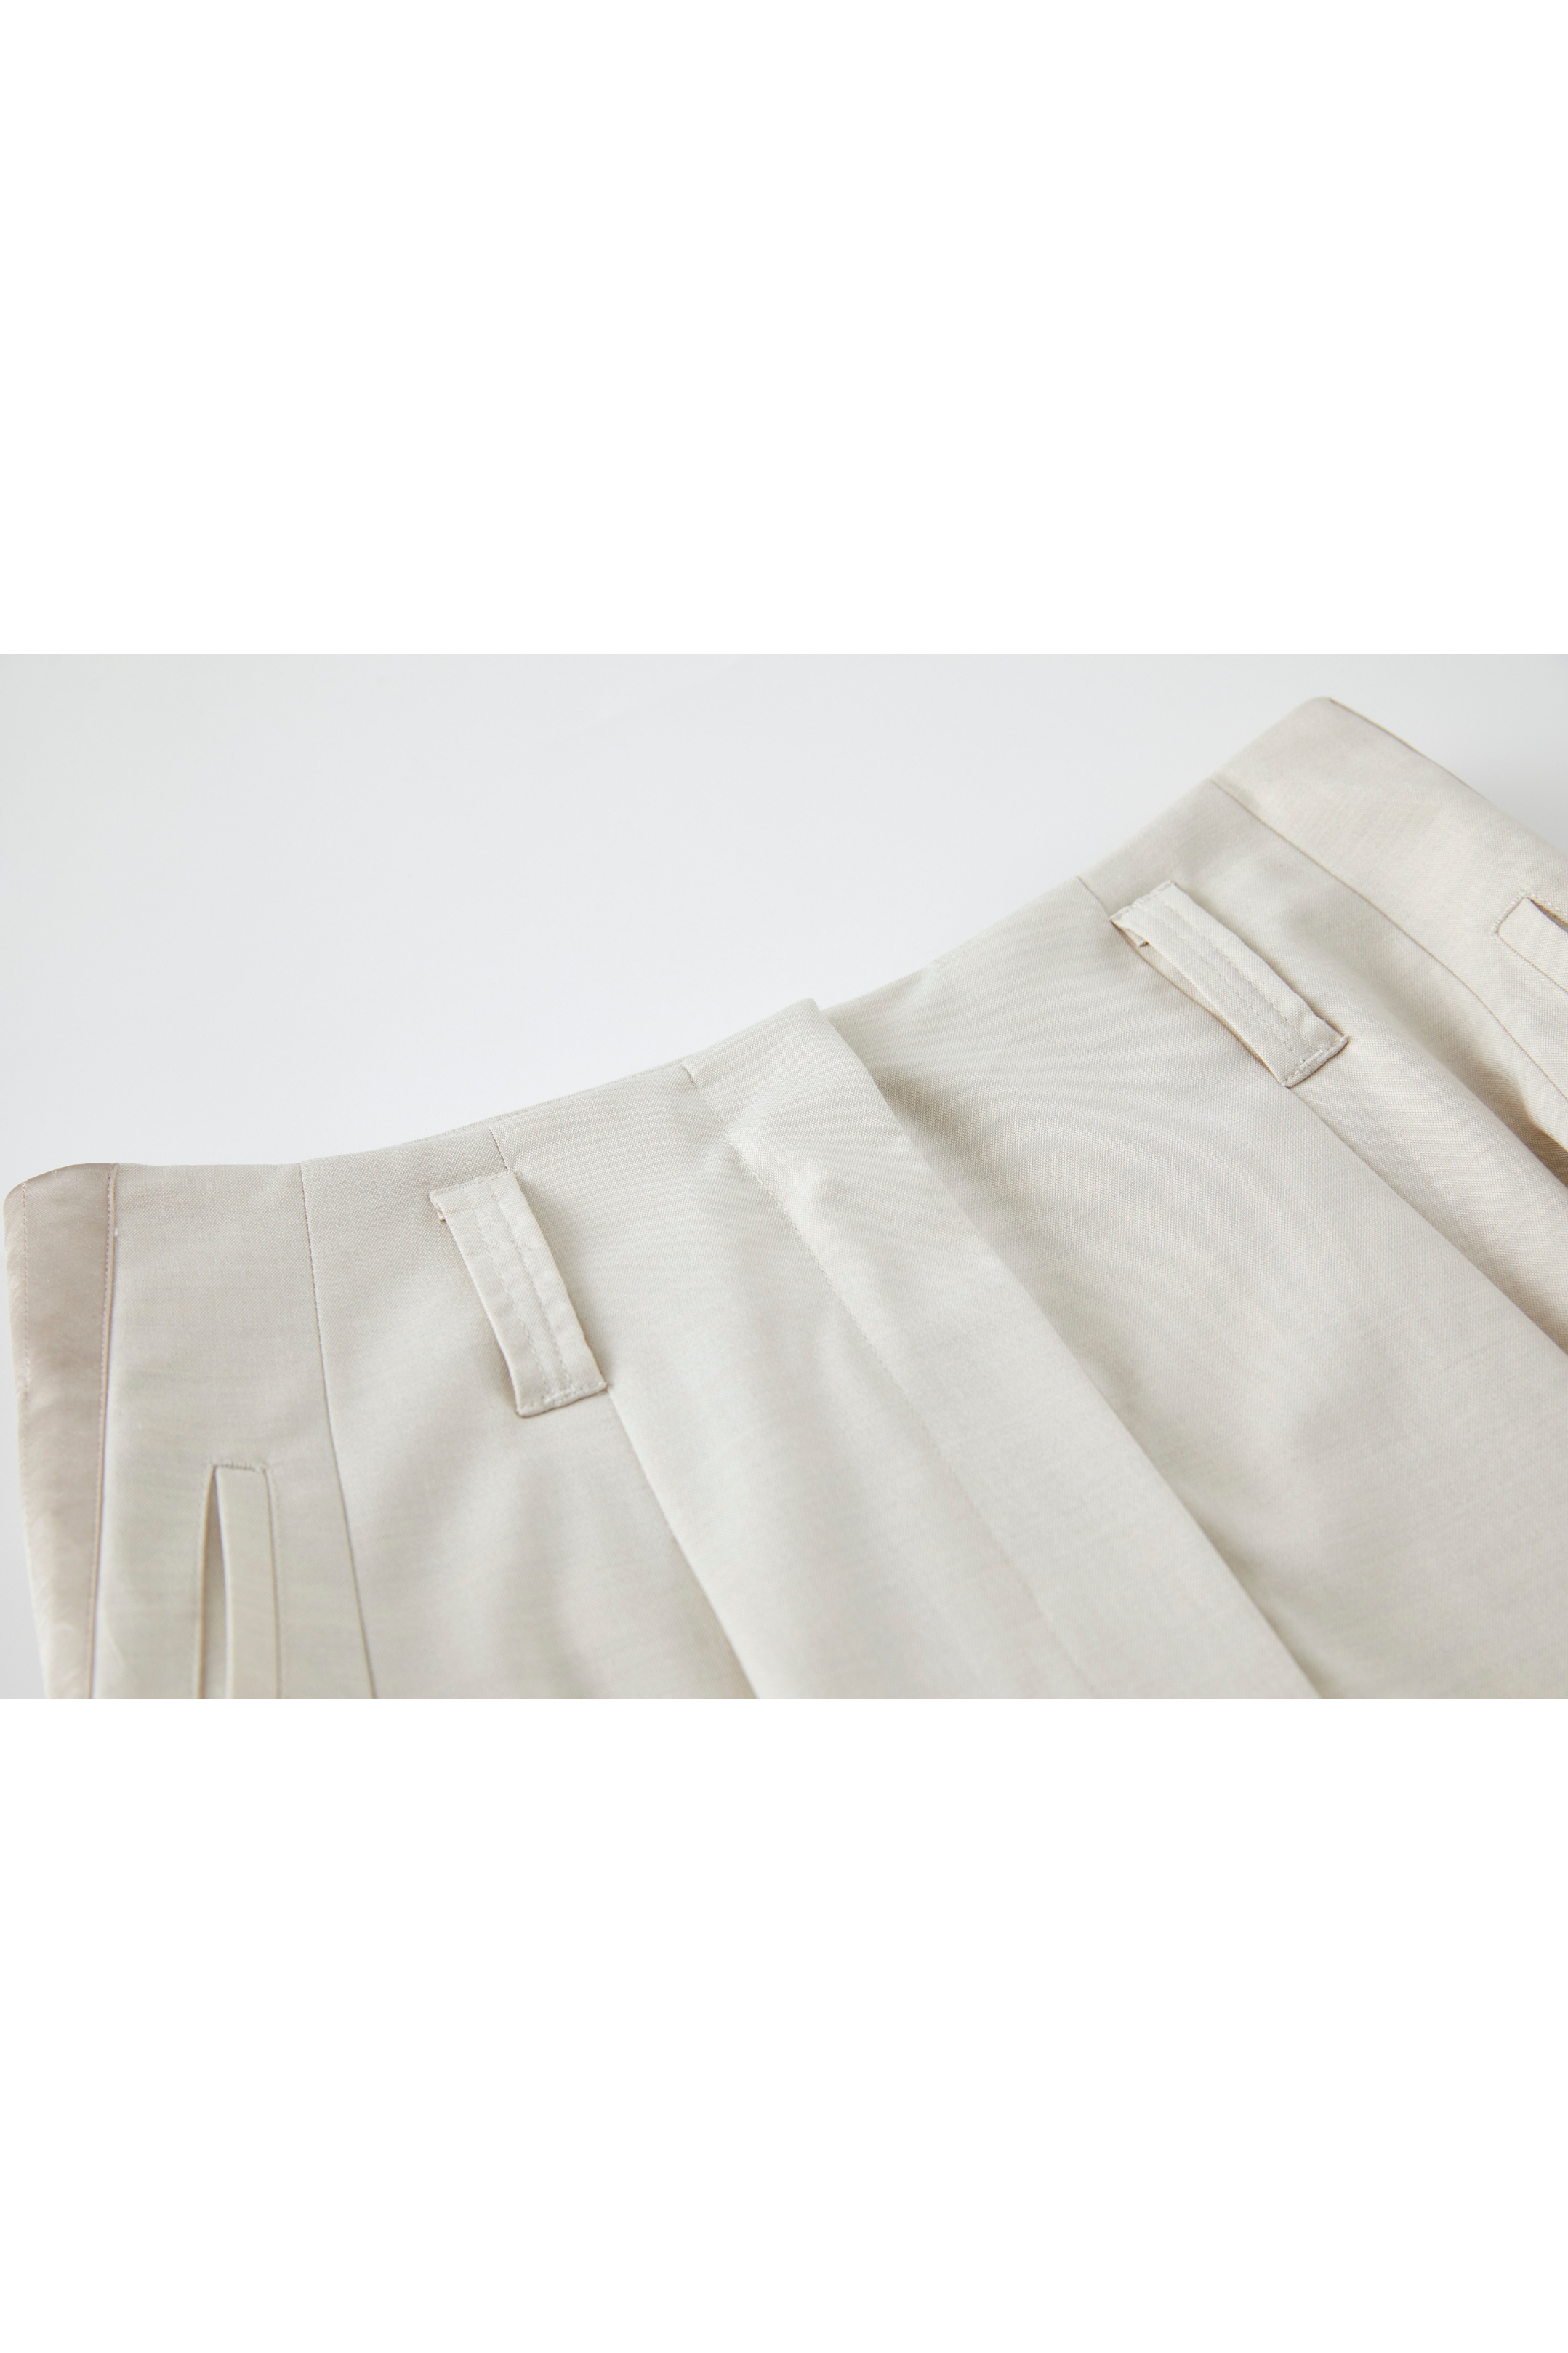 SLIT LINE SUIT SKIRT / スリットラインスーツスカート